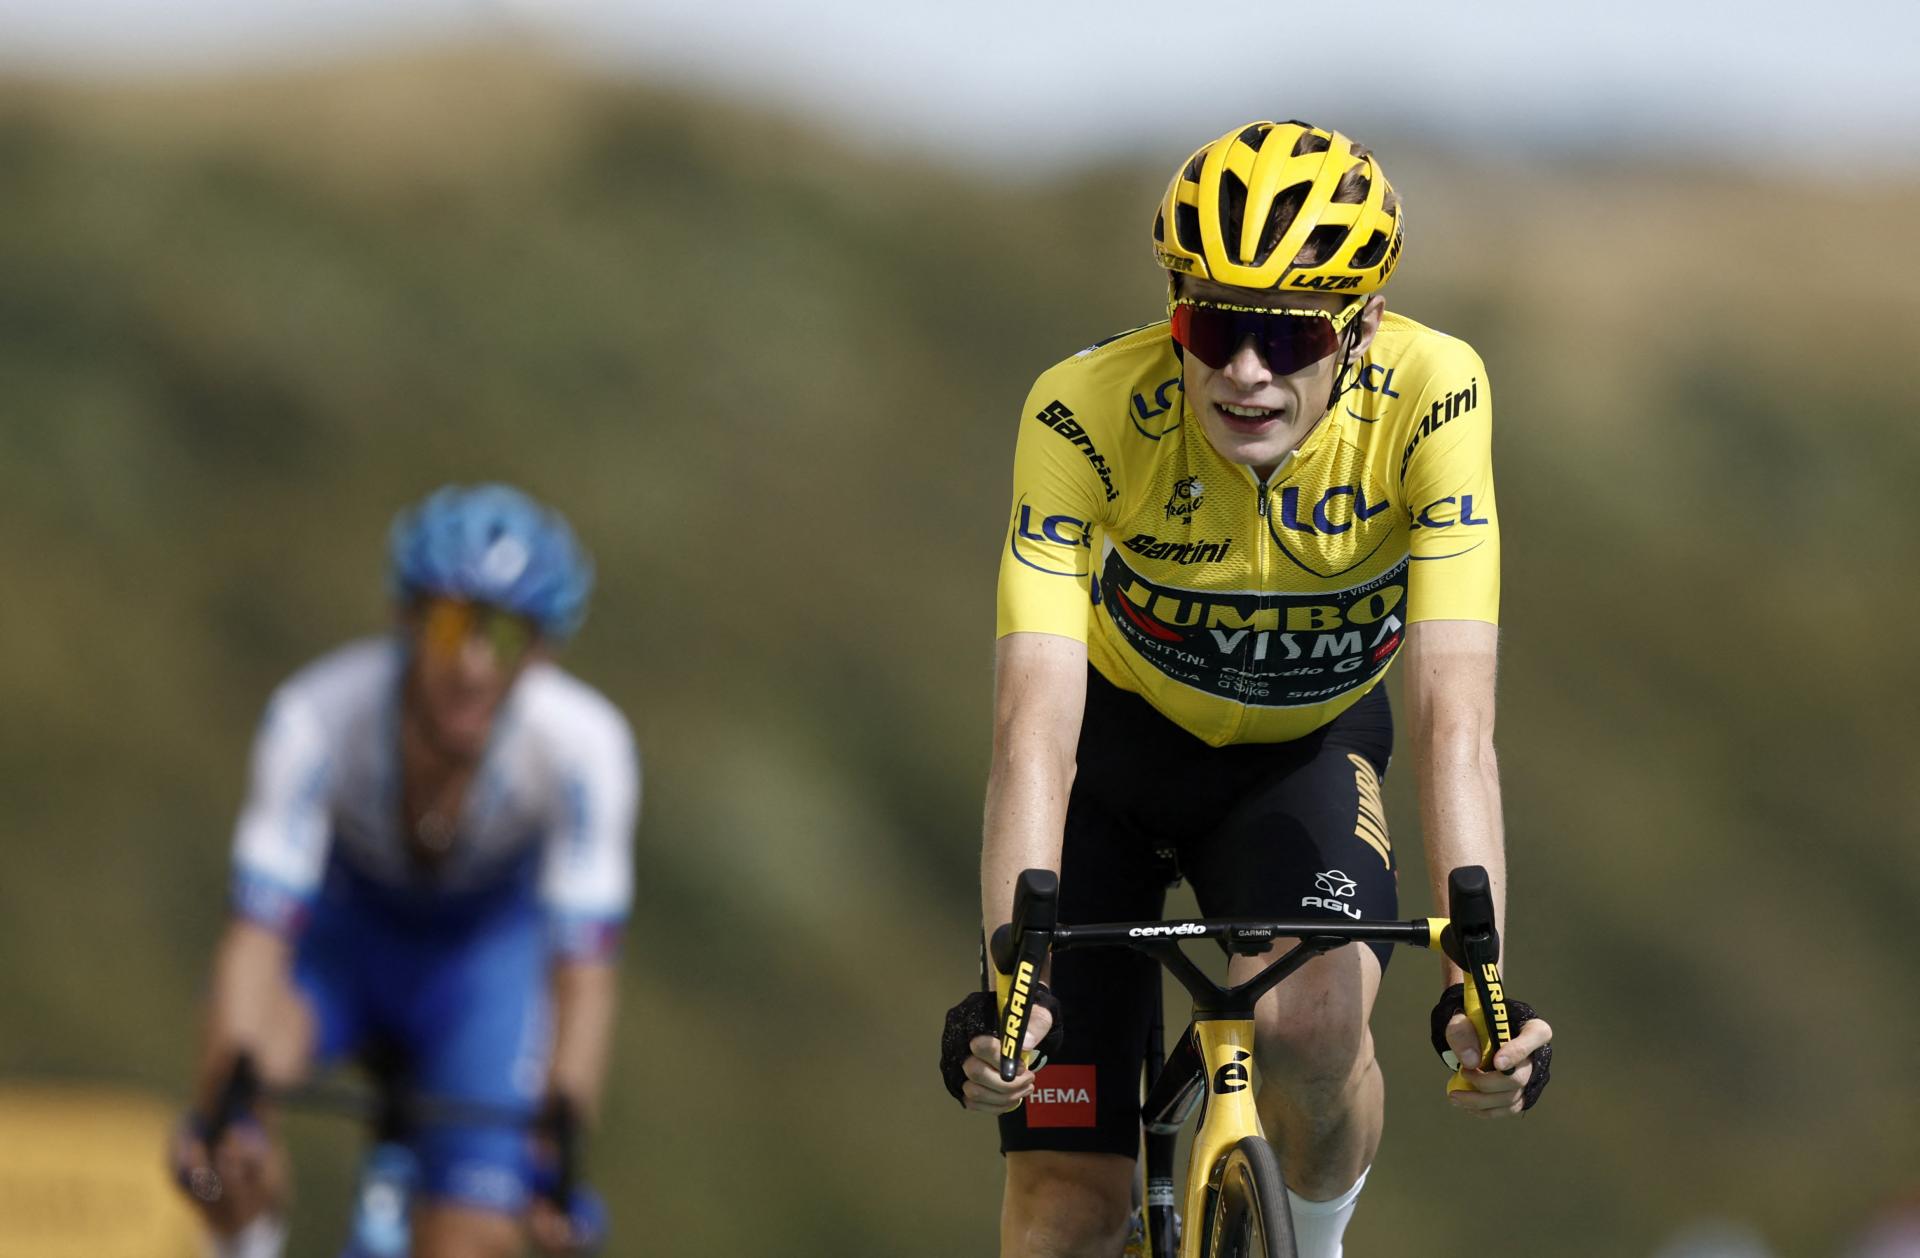 Dánsky cyklista Vingegaard si v nedeľu príde po druhý žltý dres z Tour de France v kariére